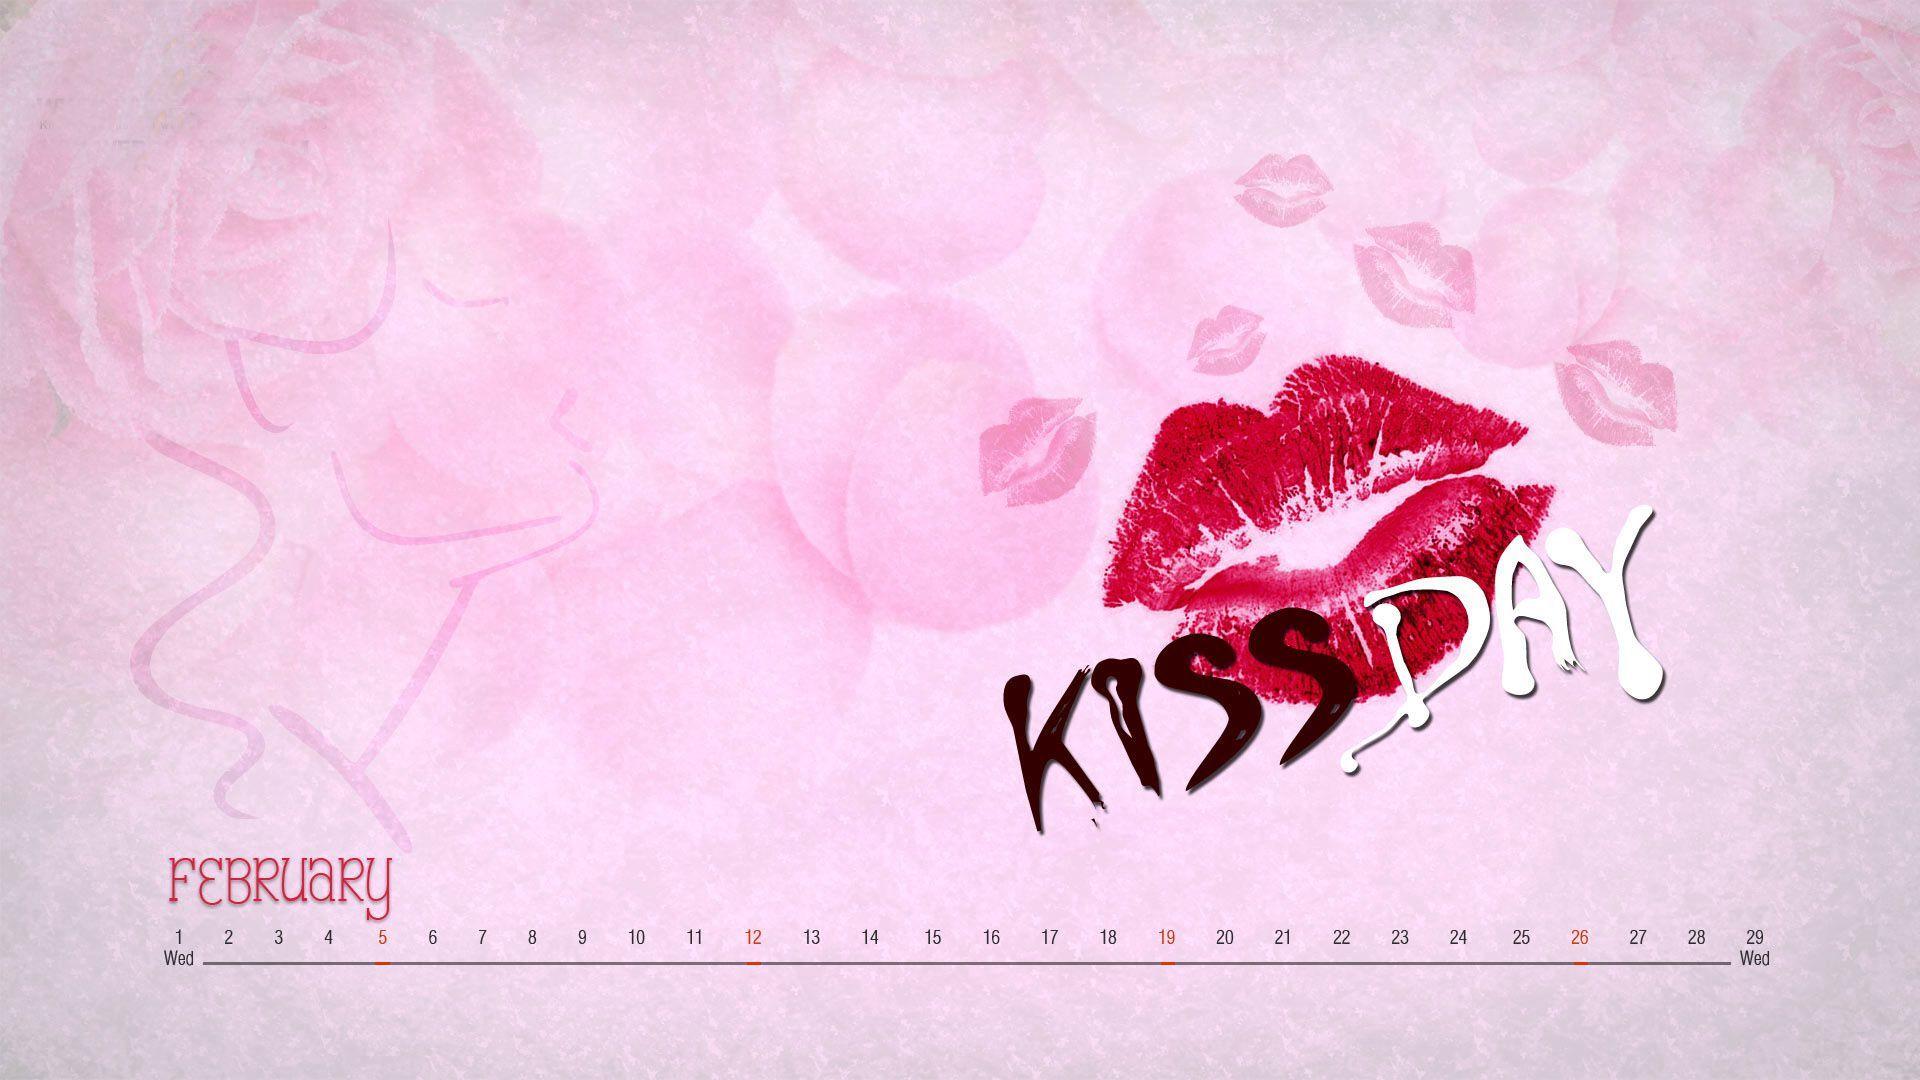 Kiss Day Wallpaper for Mobile & Desktop